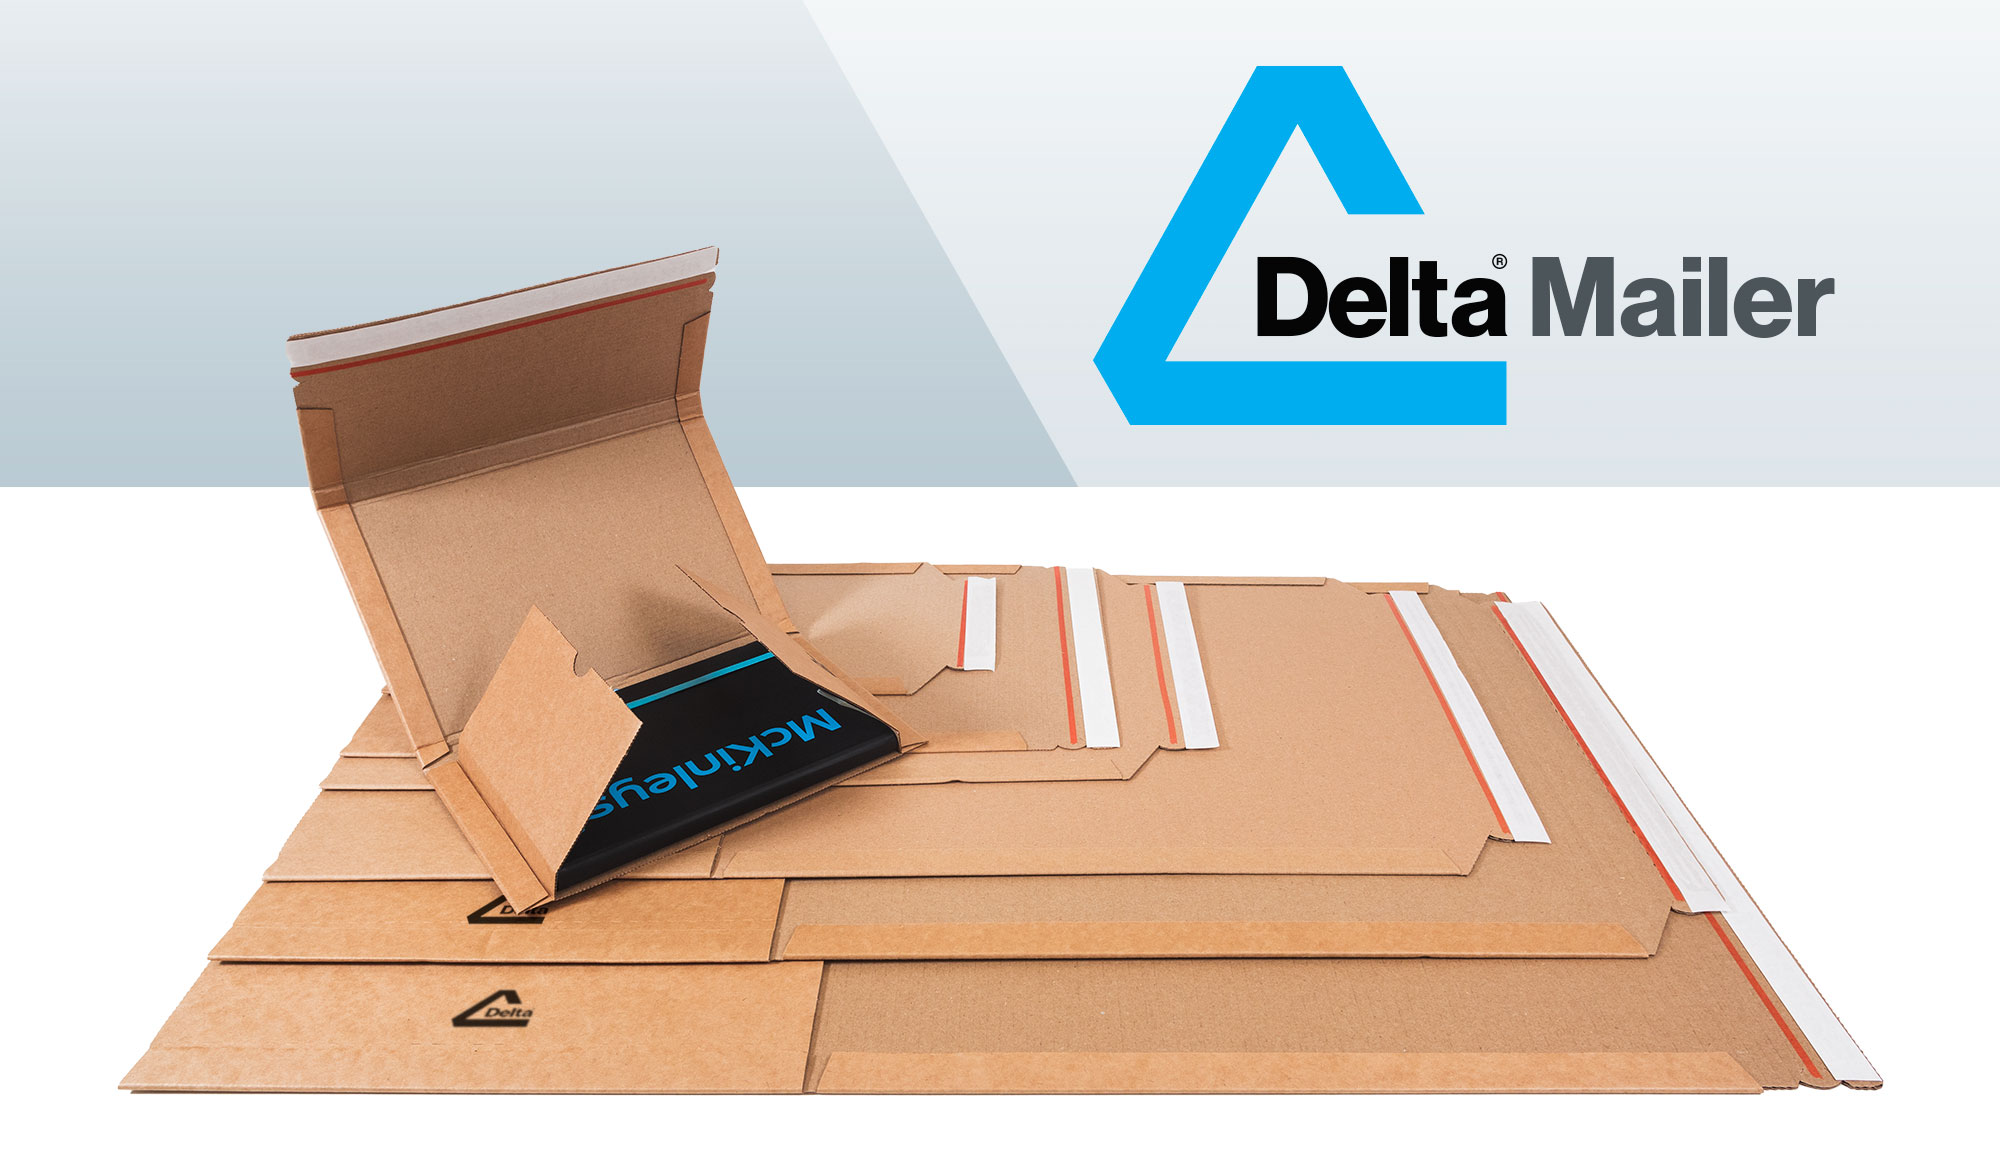 Delta Mailer